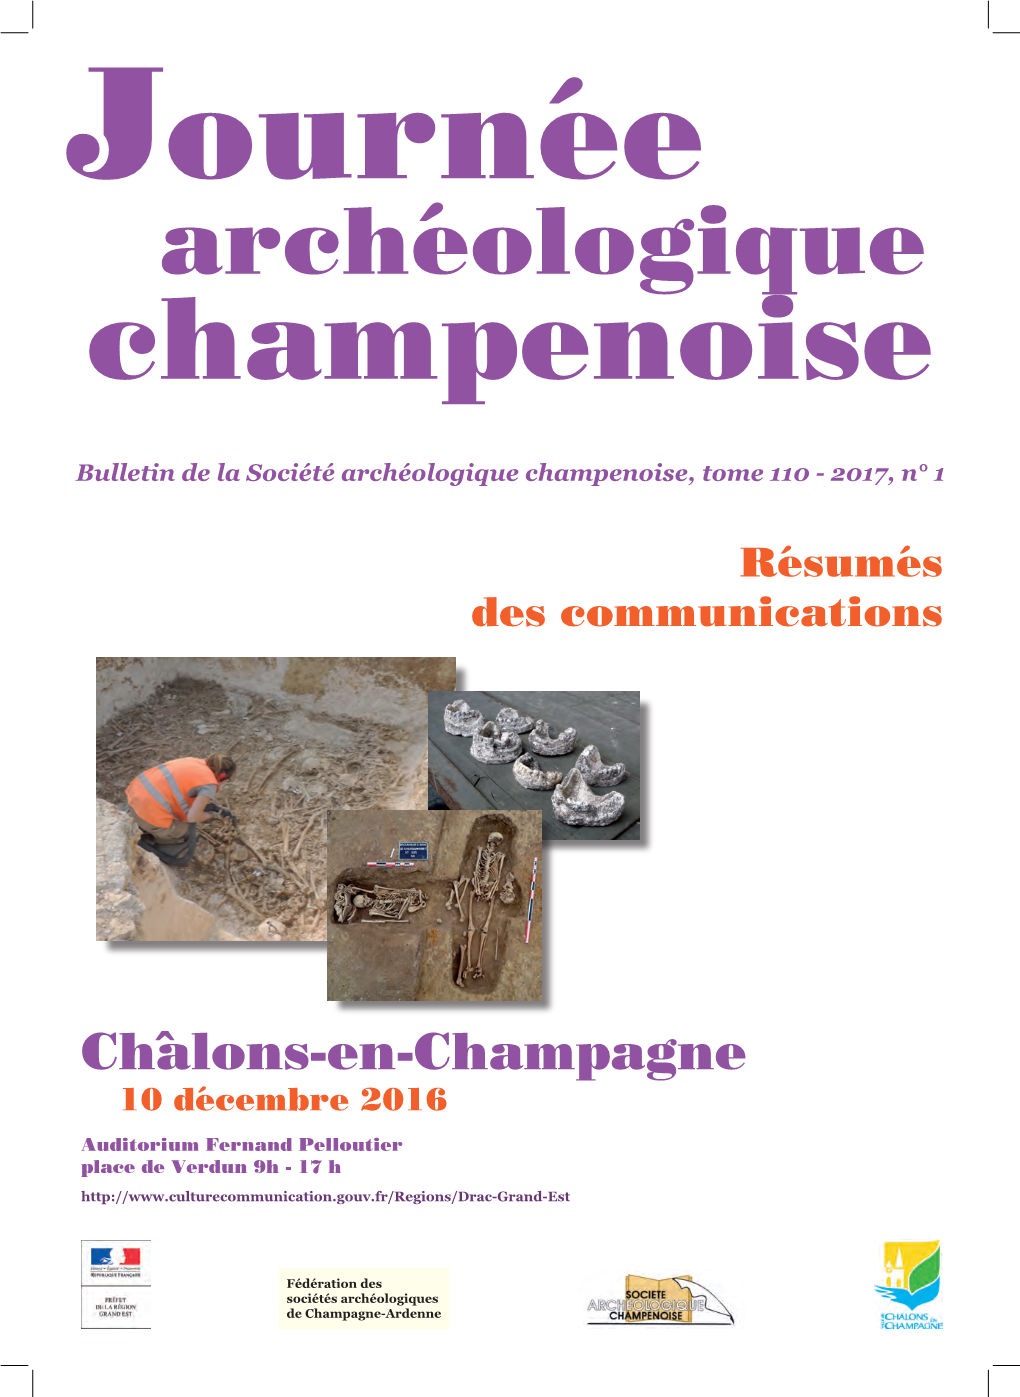 Archéologique Champenoise